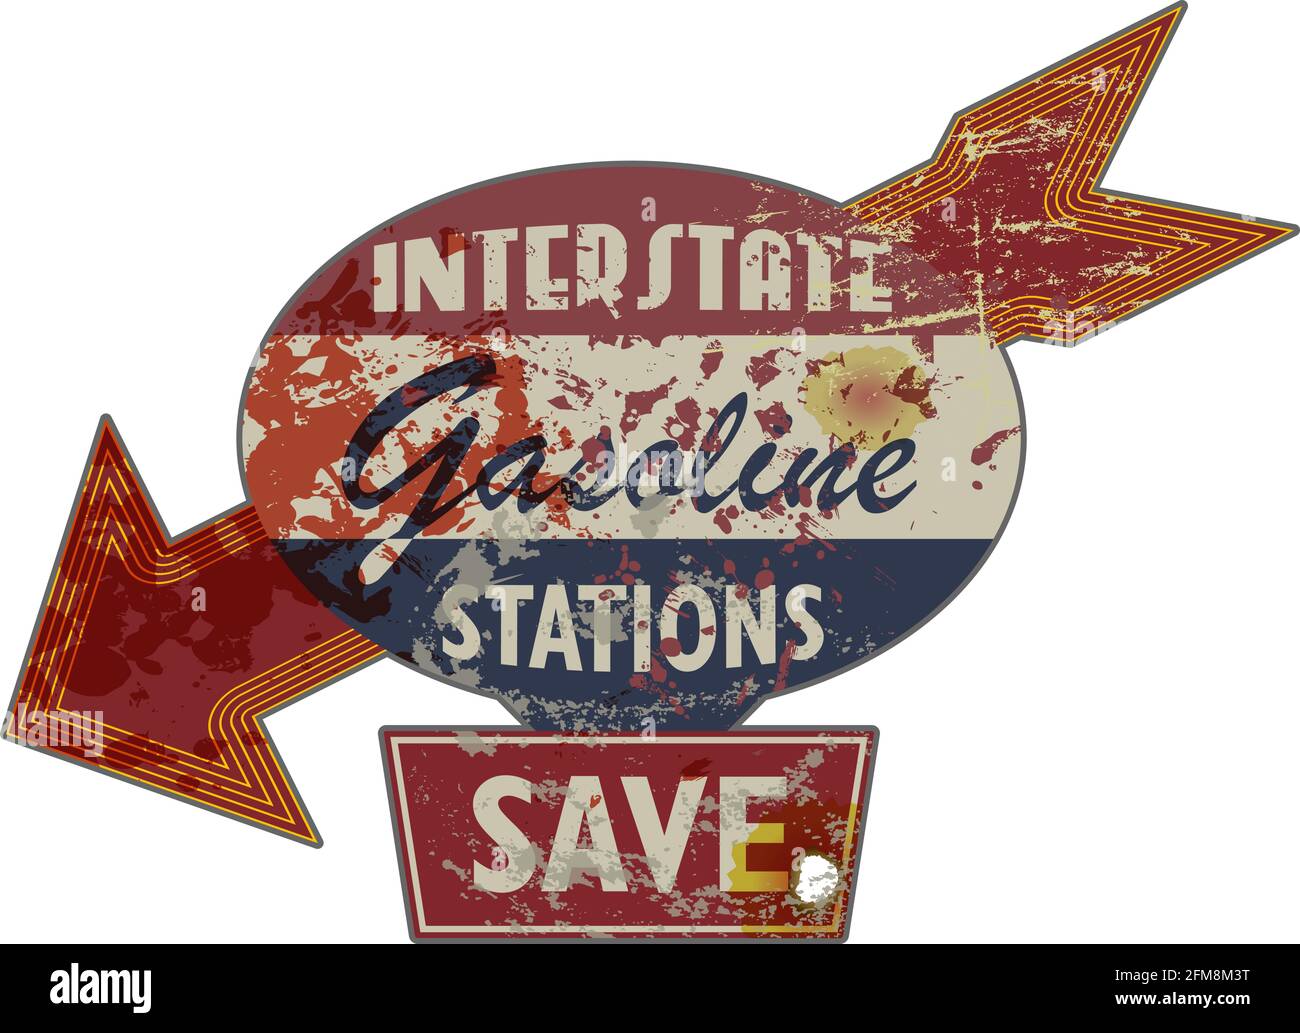 Vintage grungy amerikanischen Autobahn-Tankstelle Zeichen, retro notleidend und verwittert Vektor-Illustration Stock Vektor